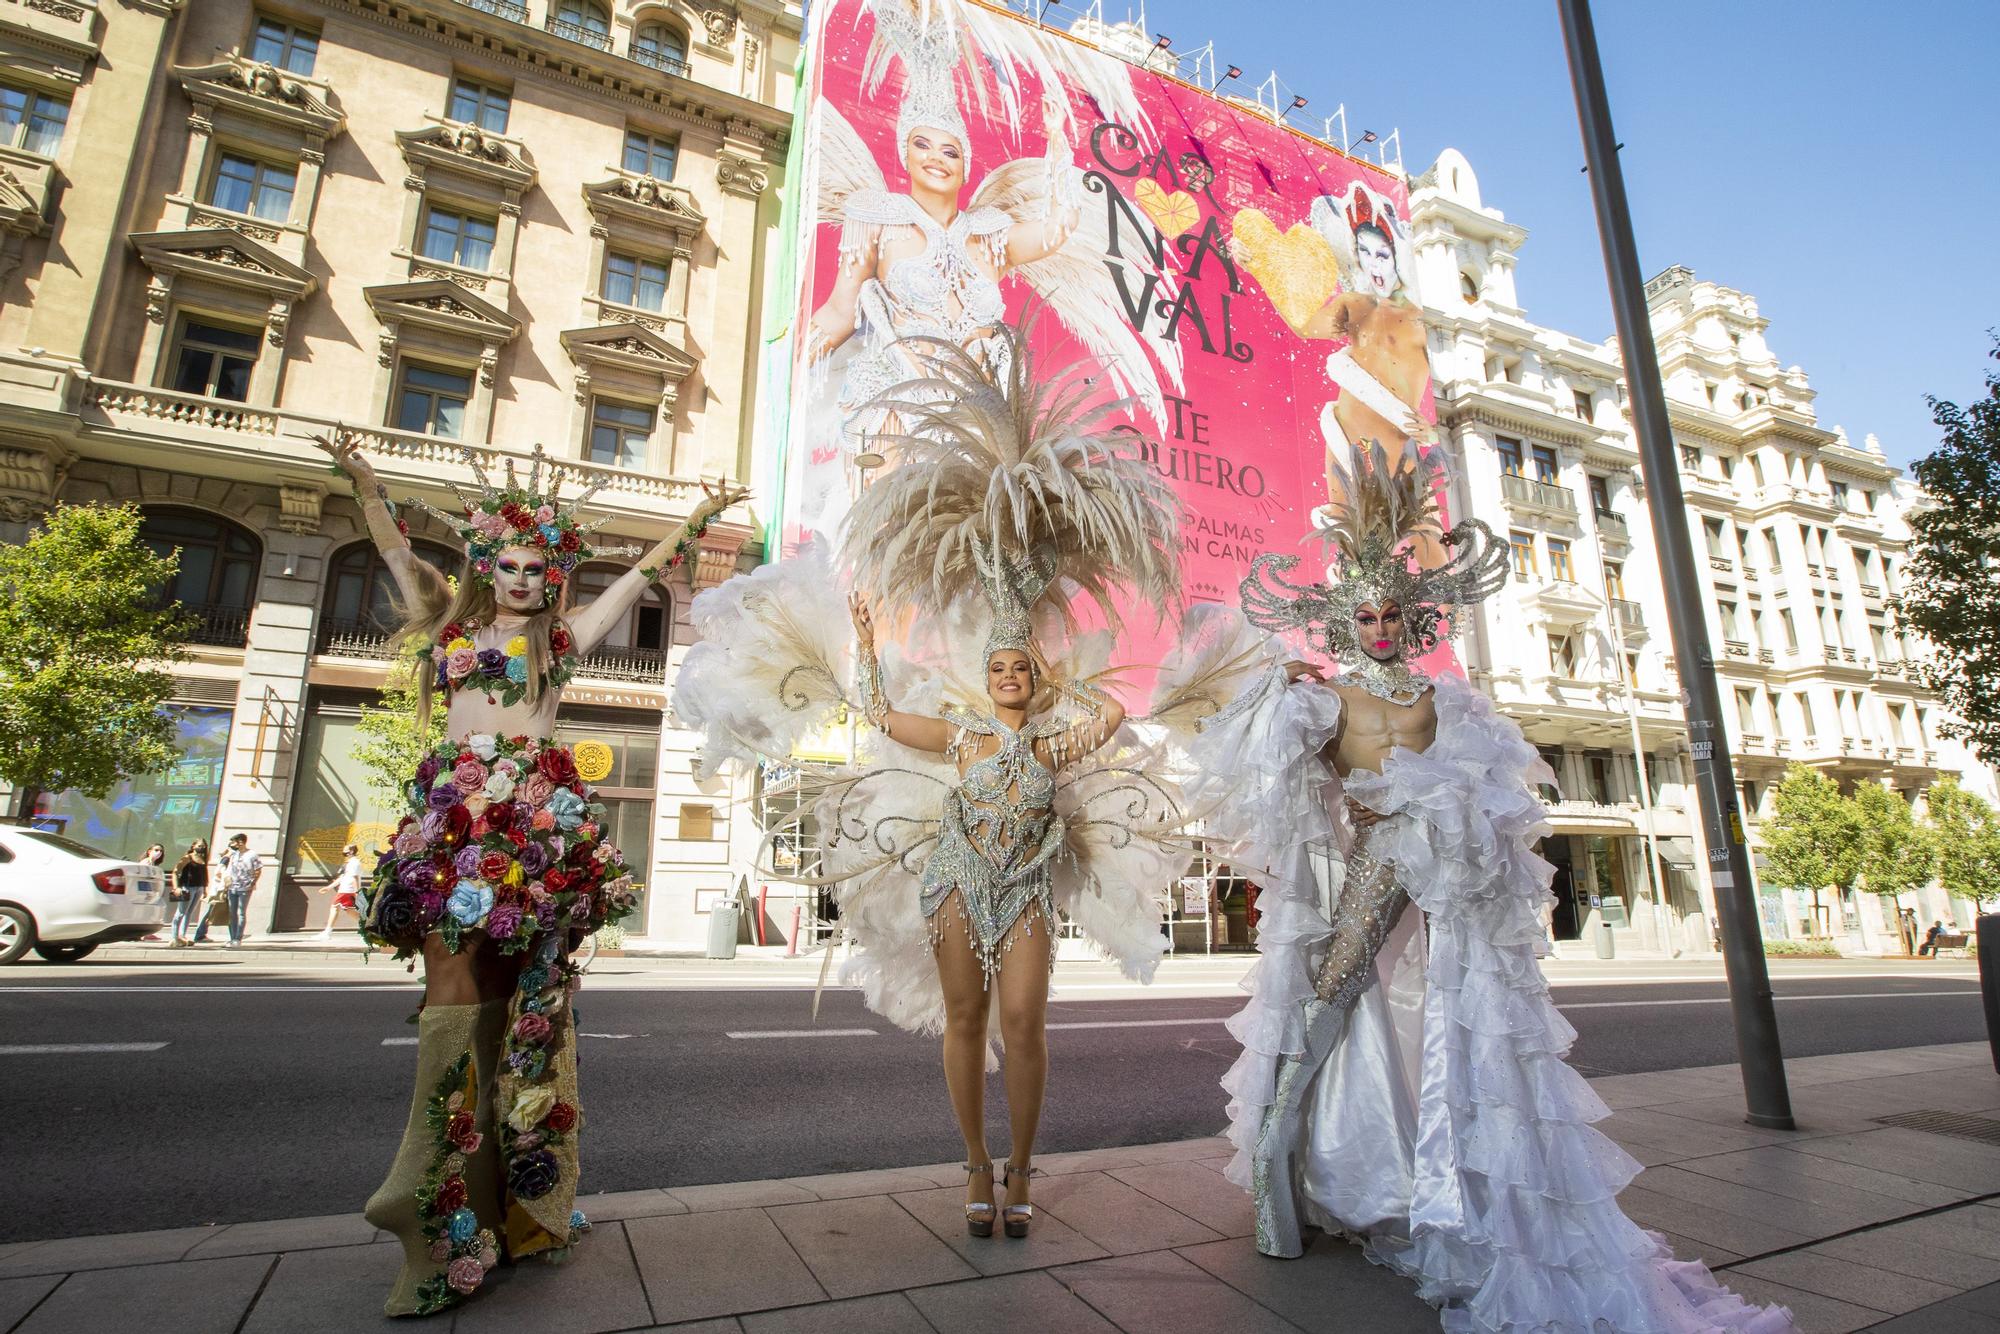 El Carnaval de Las Palmas de Gran Canaria late en el corazón de Madrid